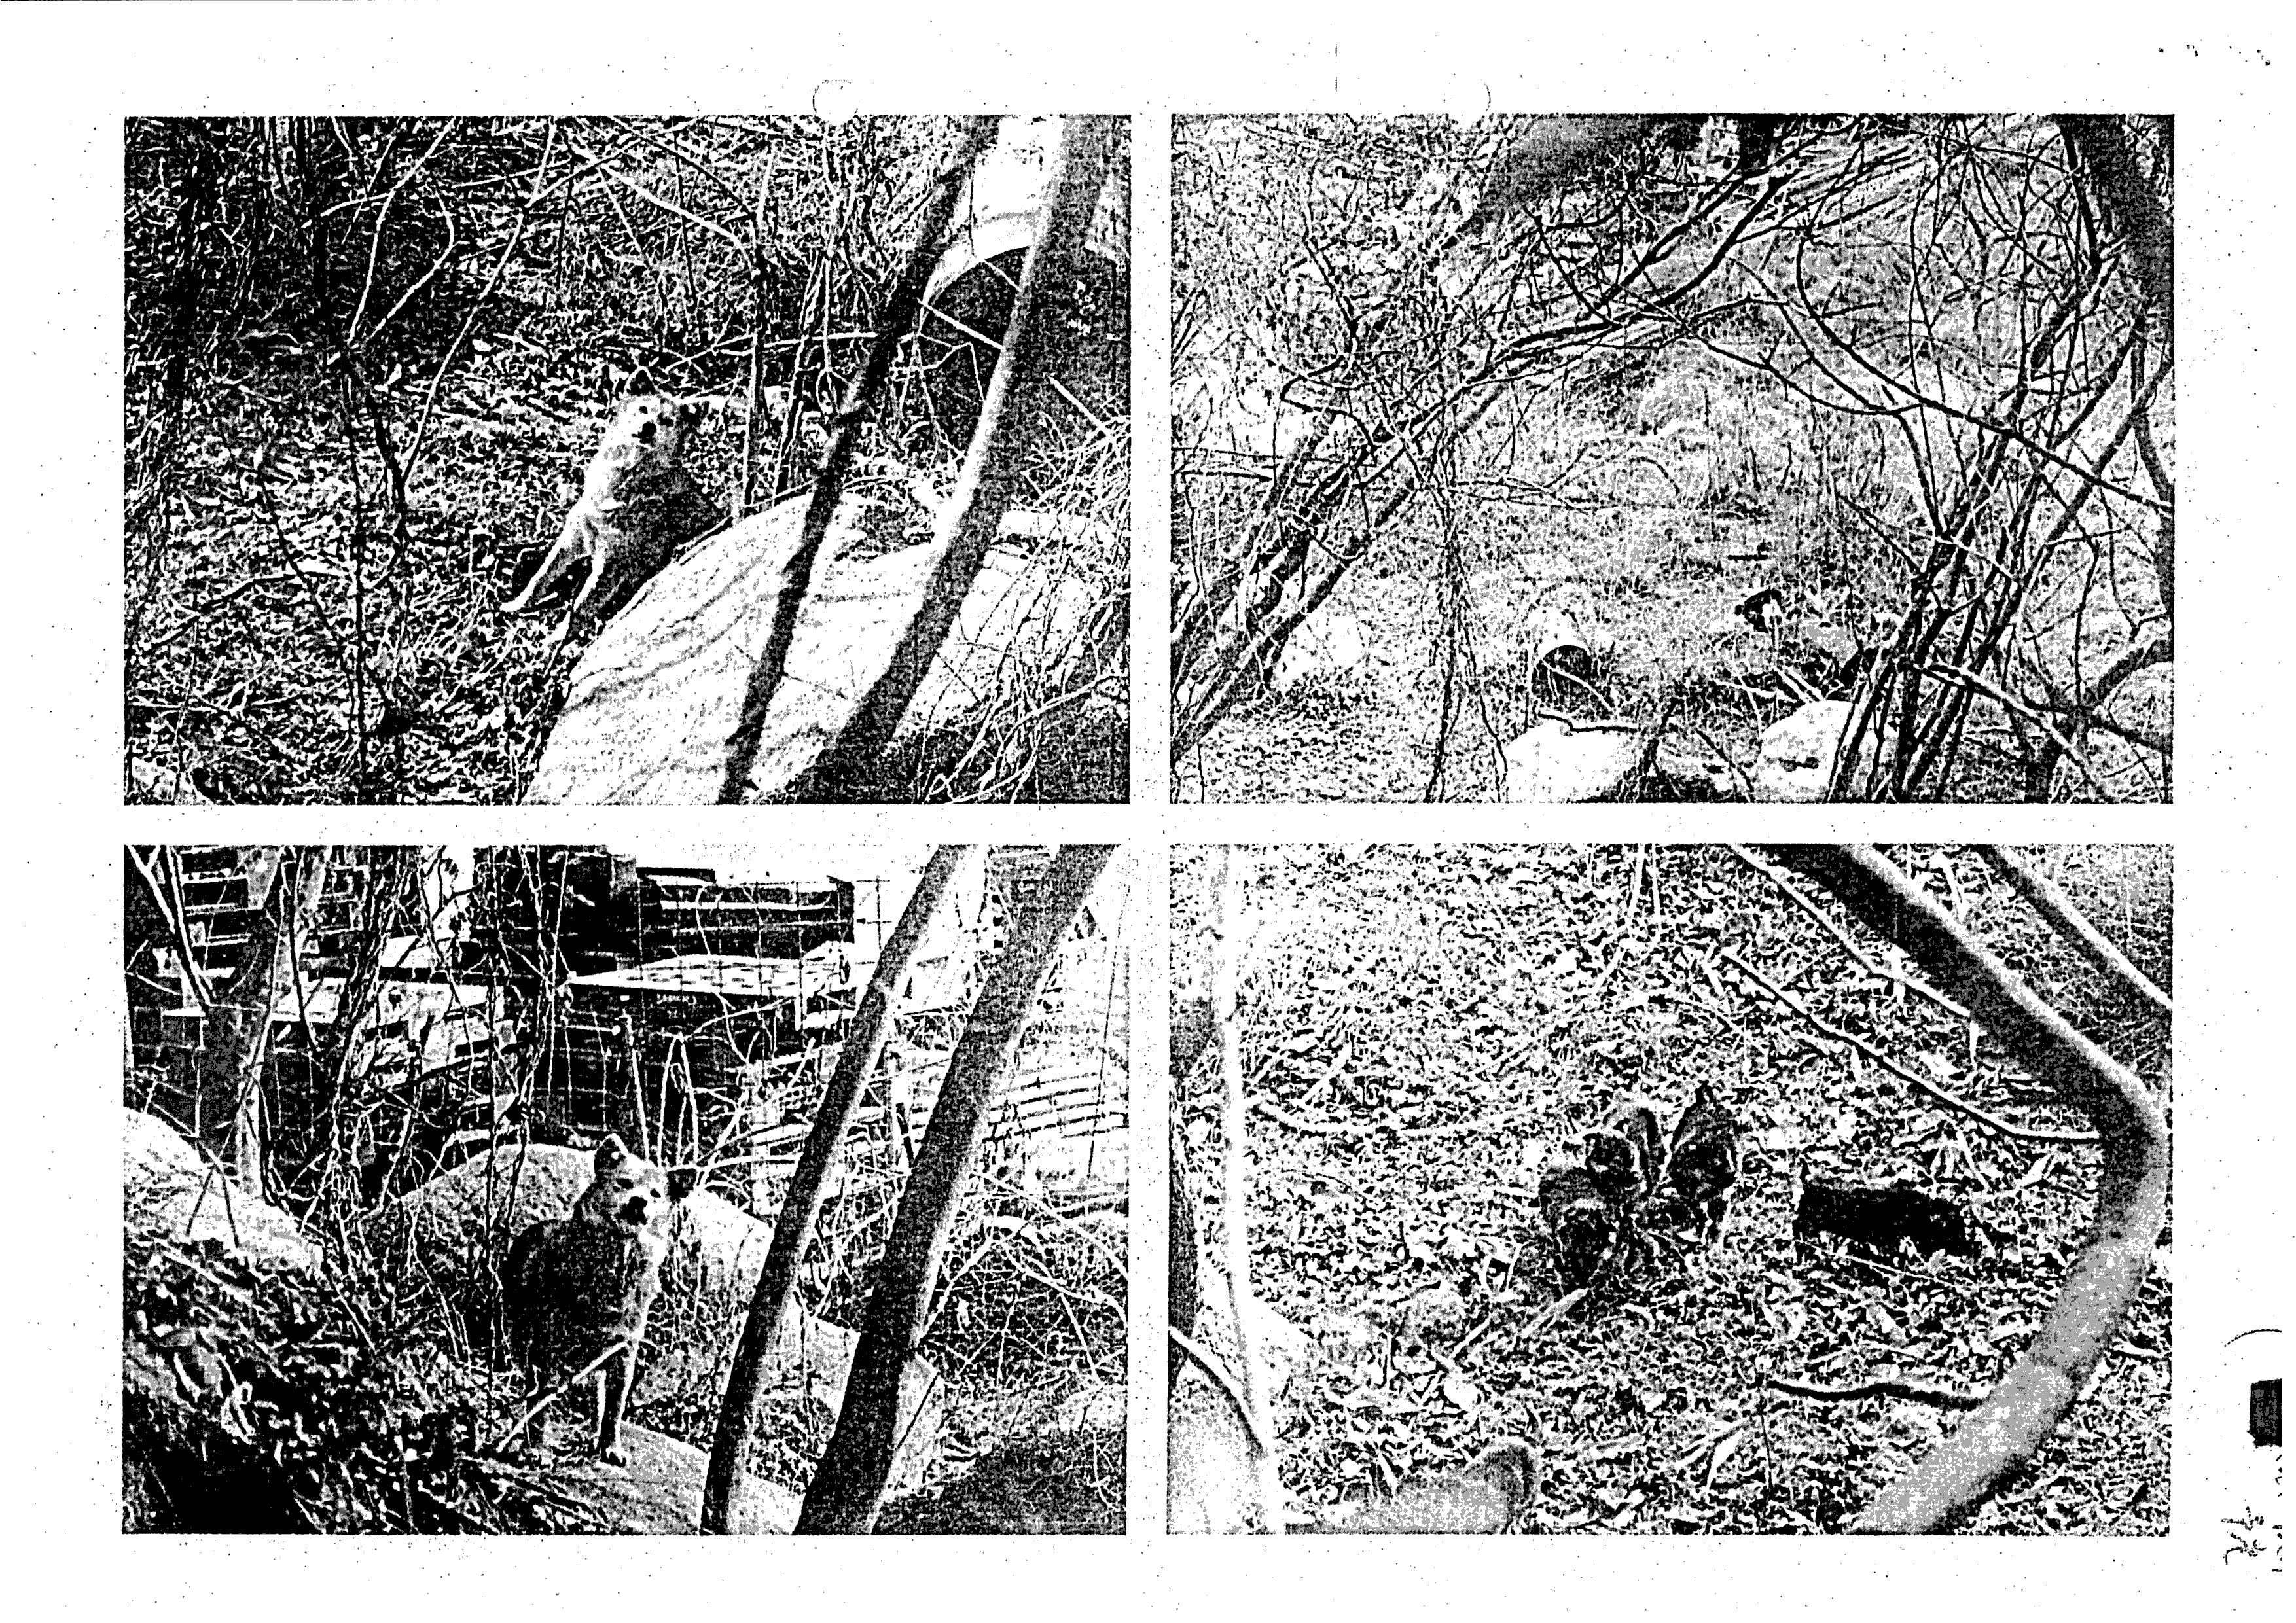 令和4年3月25日-中ノ川町と東鳴川町の徘徊犬に関する経過文書写真-01